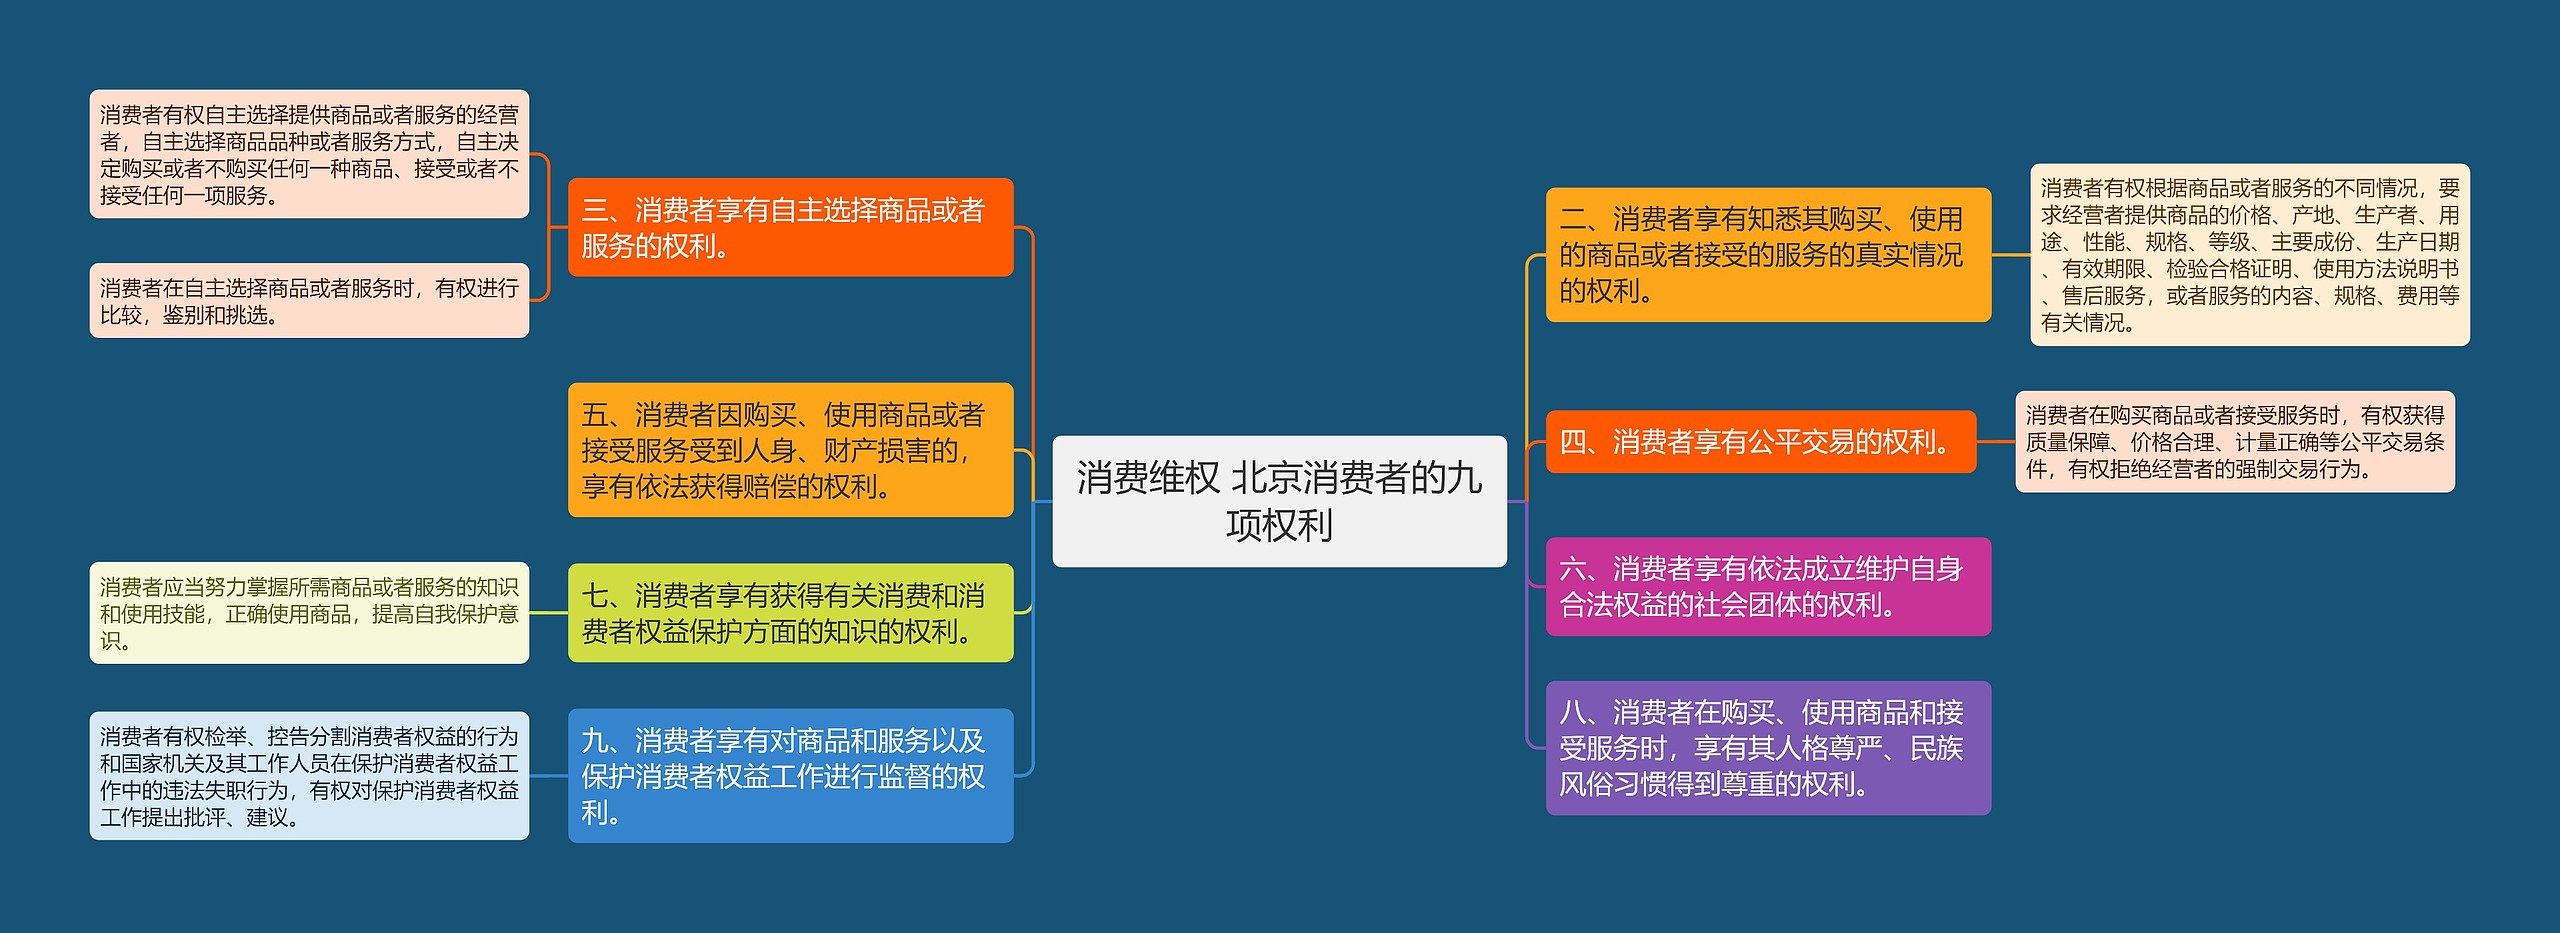 消费维权 北京消费者的九项权利思维导图